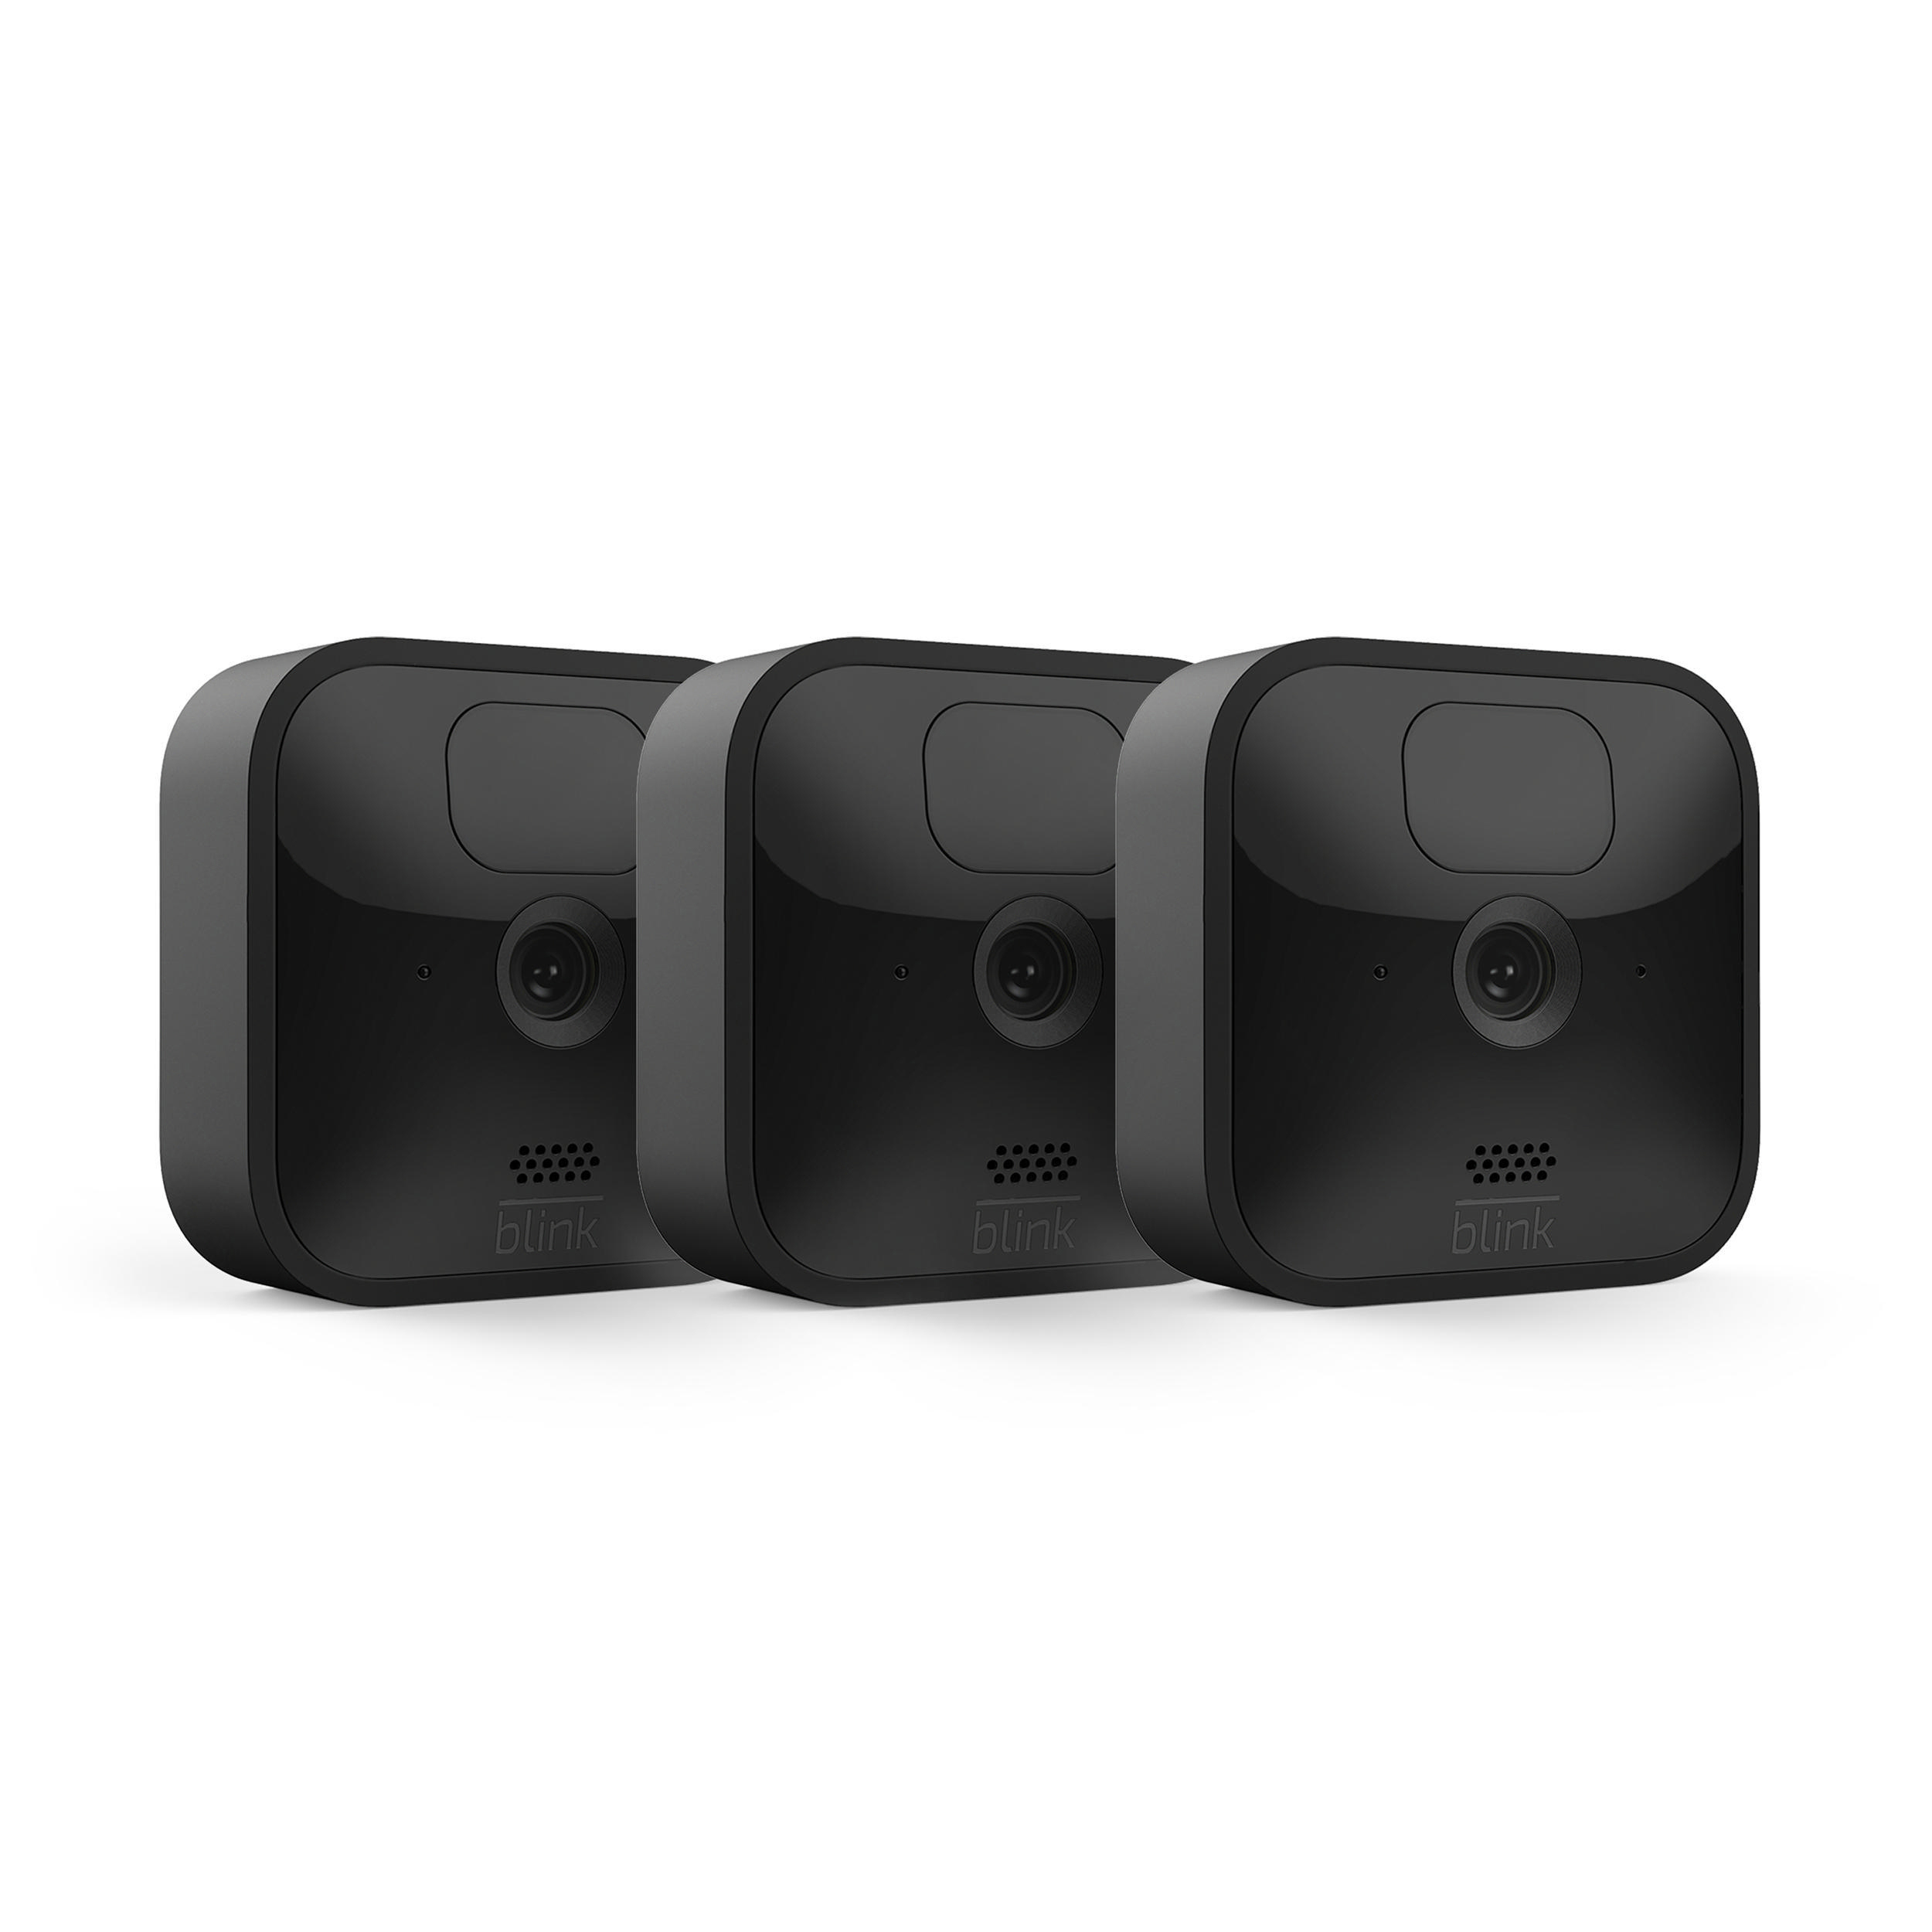 BLINK Outdoor Kamera System, 3 Überwachungskamera